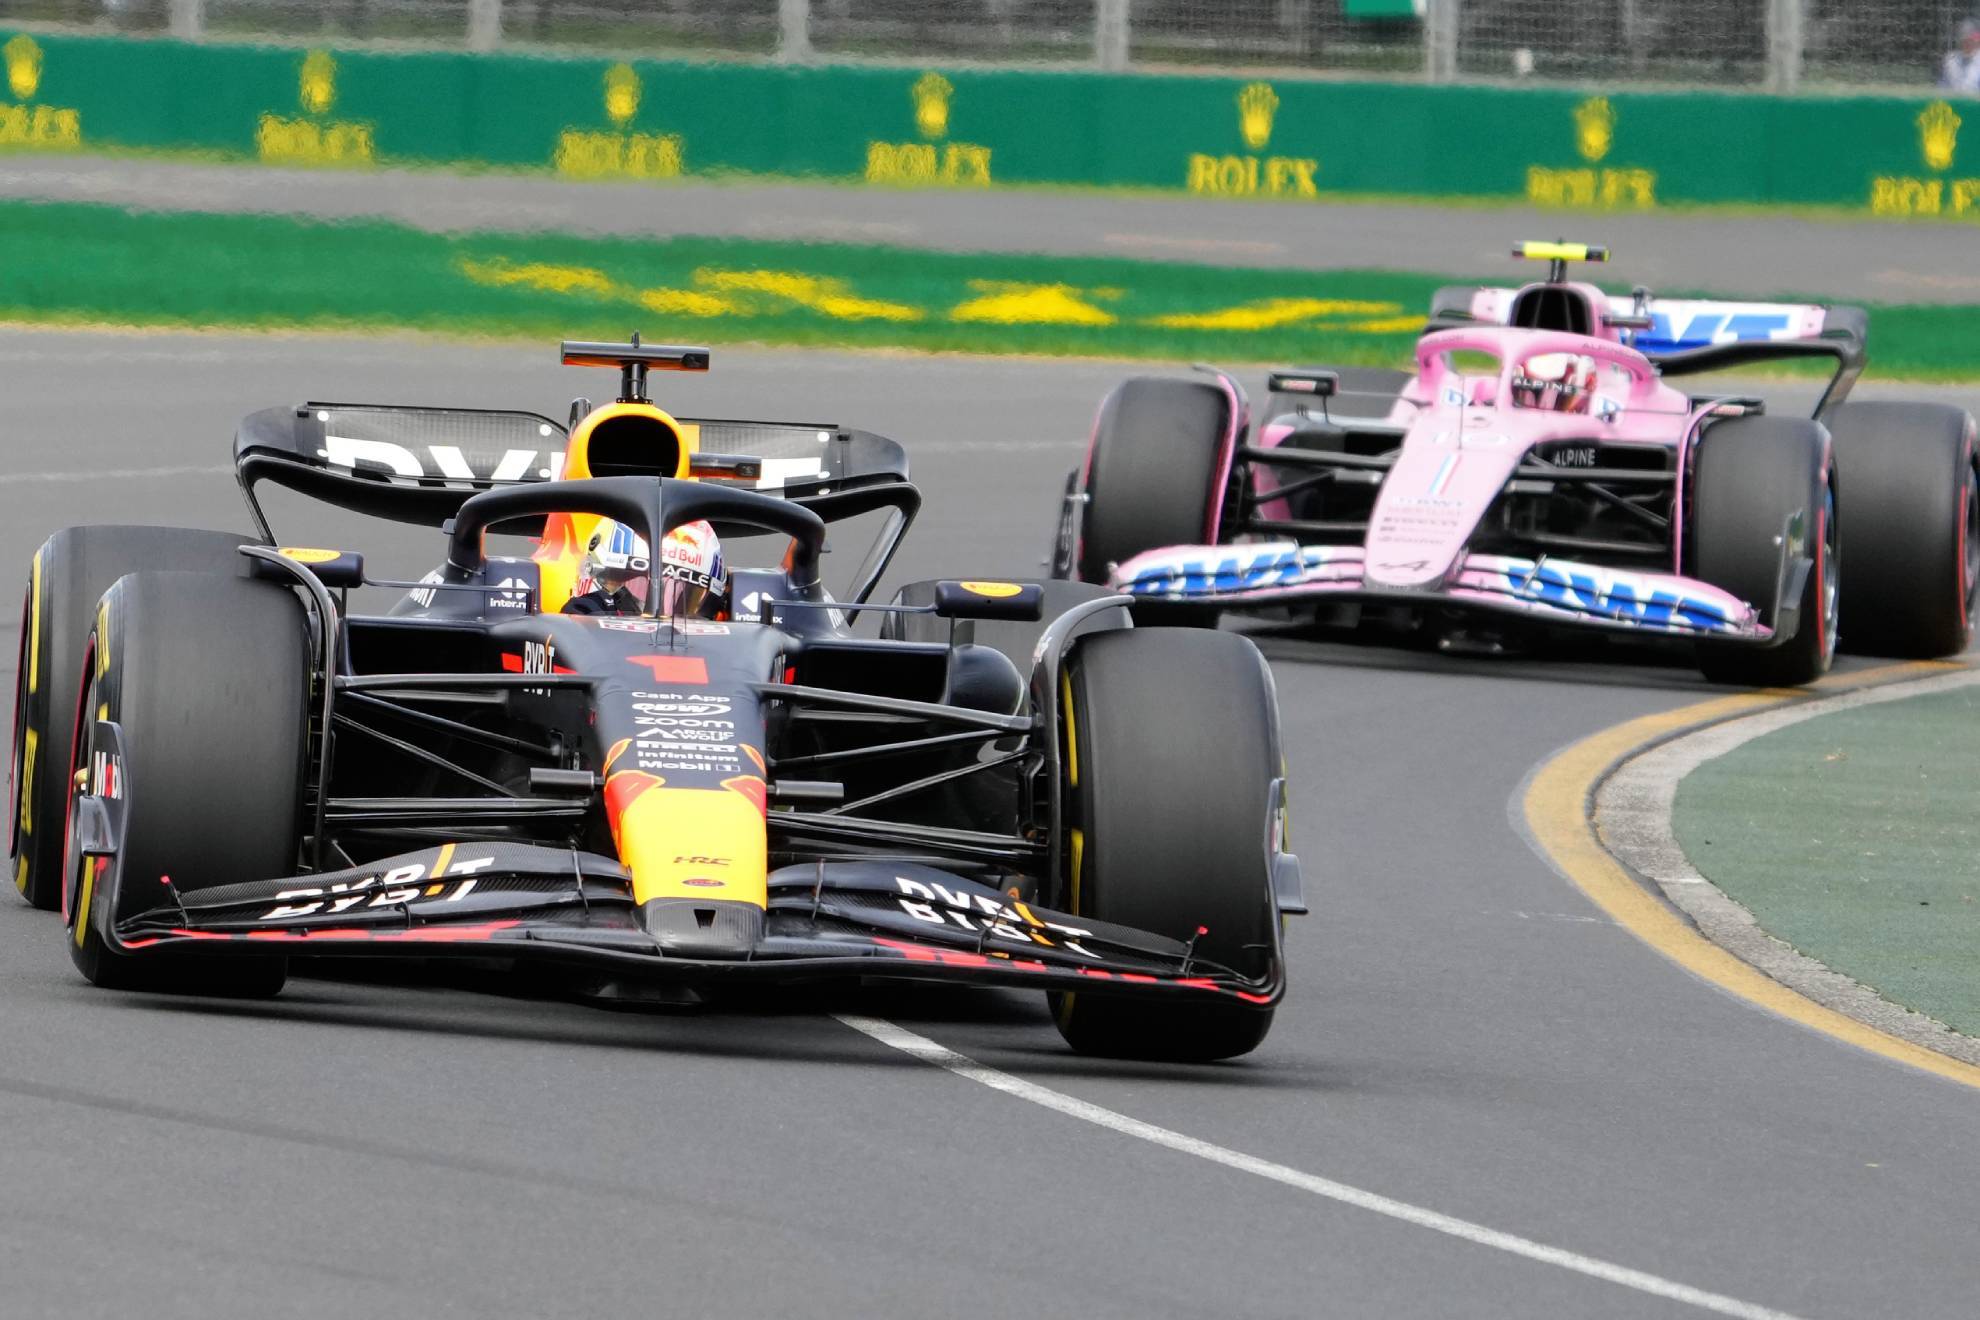 ¡Red Bull y las dos caras de la moneda! Checo Pérez de último y Max Verstappen a la pole position